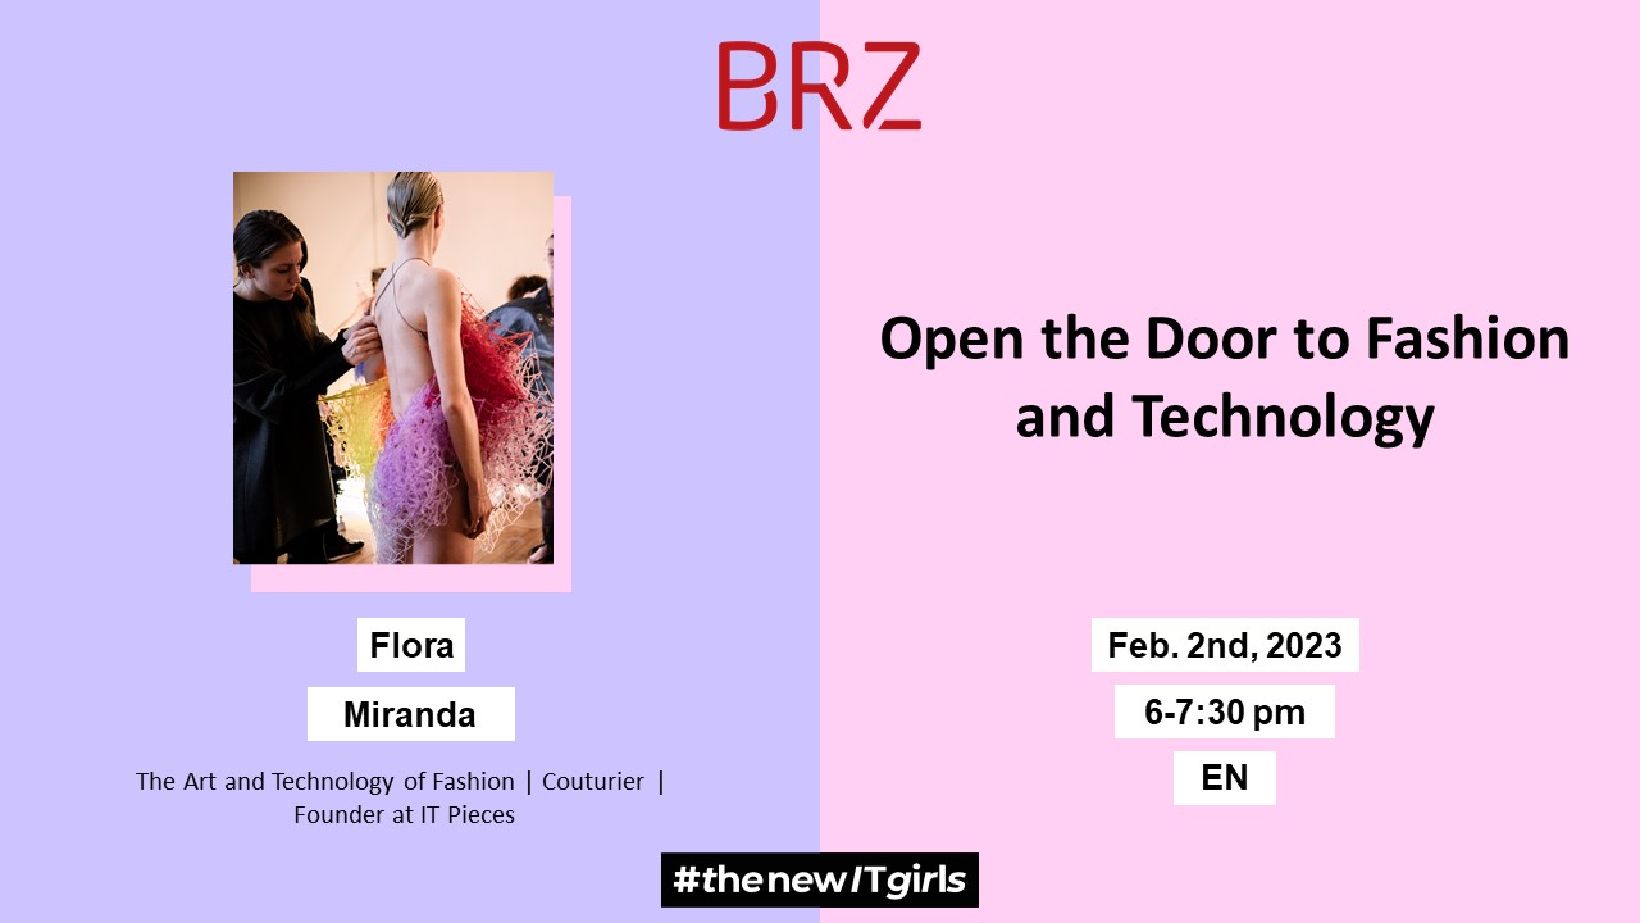 Open the Door to Fashion and Technology von #thenewITgirls am 2. Februar 2023 von 18-19:30 Uhr. Das Event findet online und auf Englisch statt. Zu Gast ist unter anderem Flora Miranda, Cuturier und Gründerin bei IT Pieces